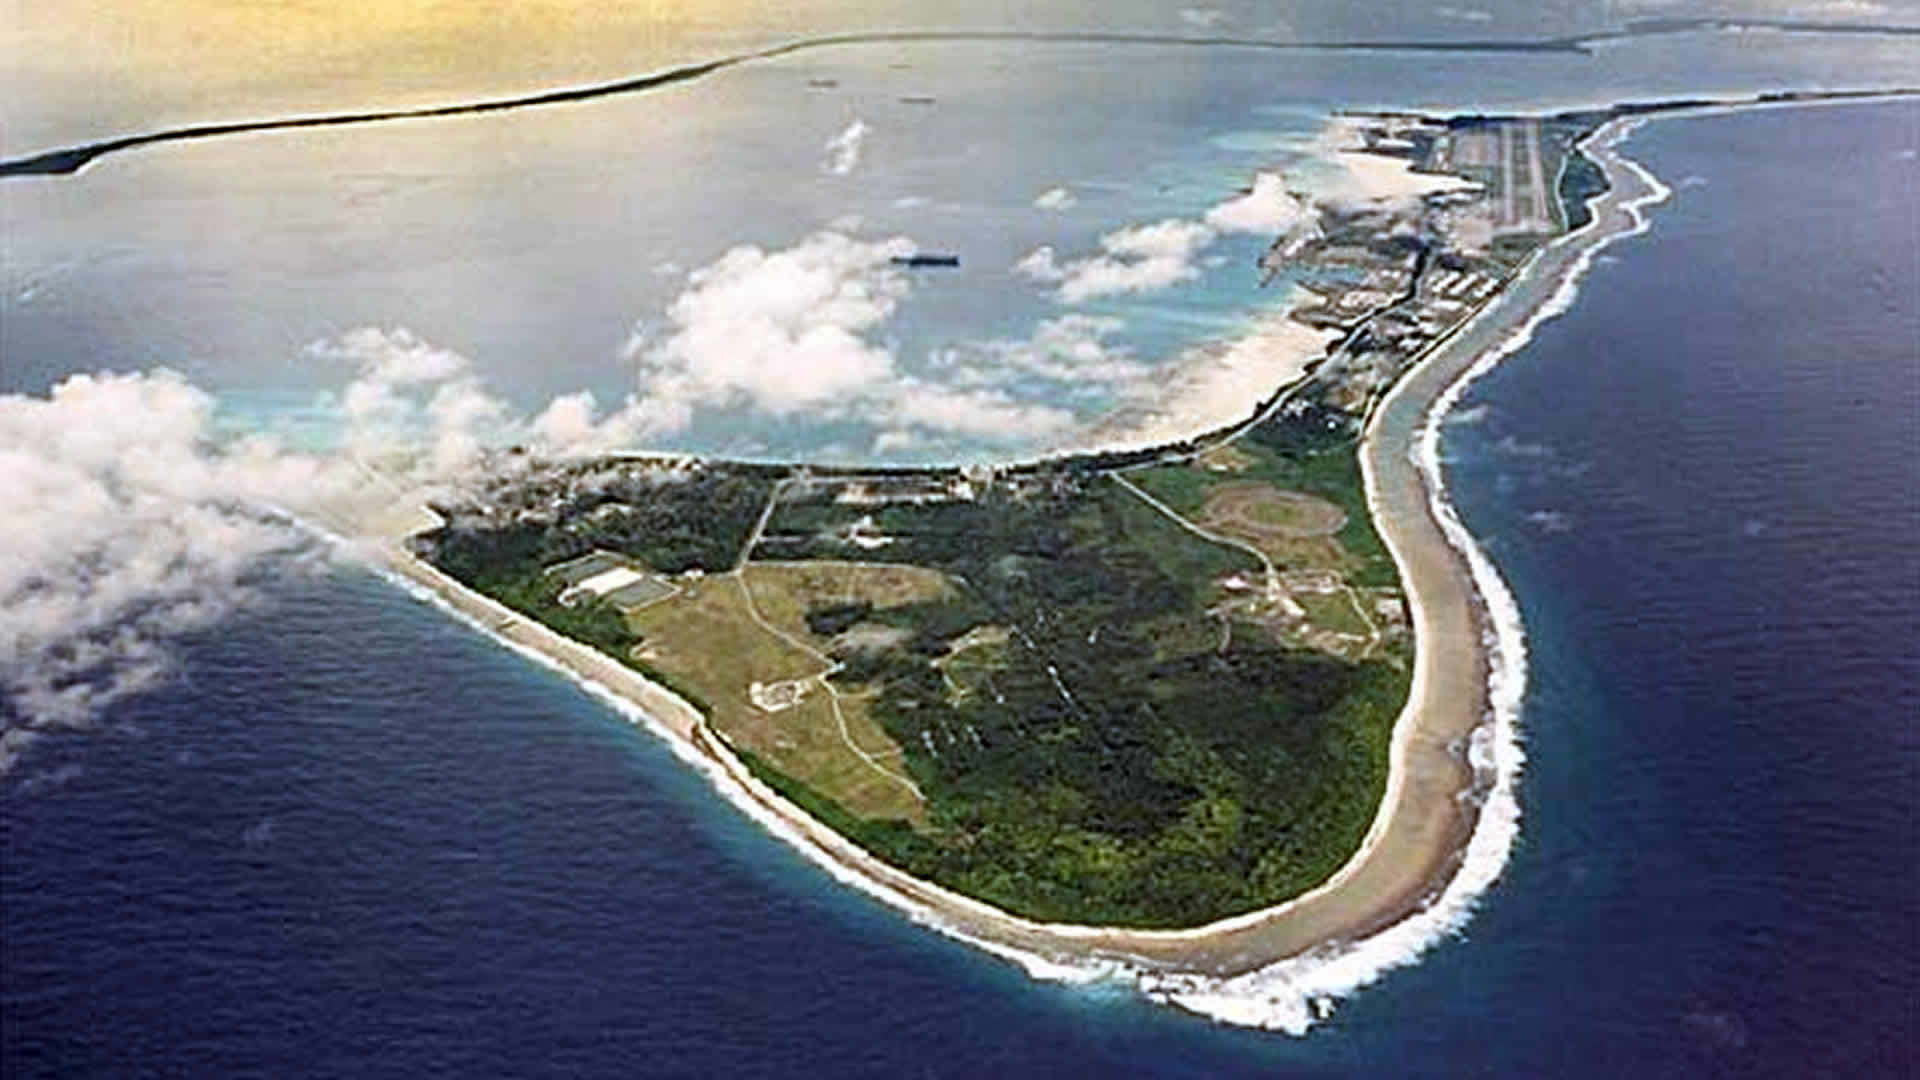 Archipel des Chagos: Le gouvernement mauricien conteste la décision du Royaume-Uni refusant la réinstallation des anciens habitants de l’archipel